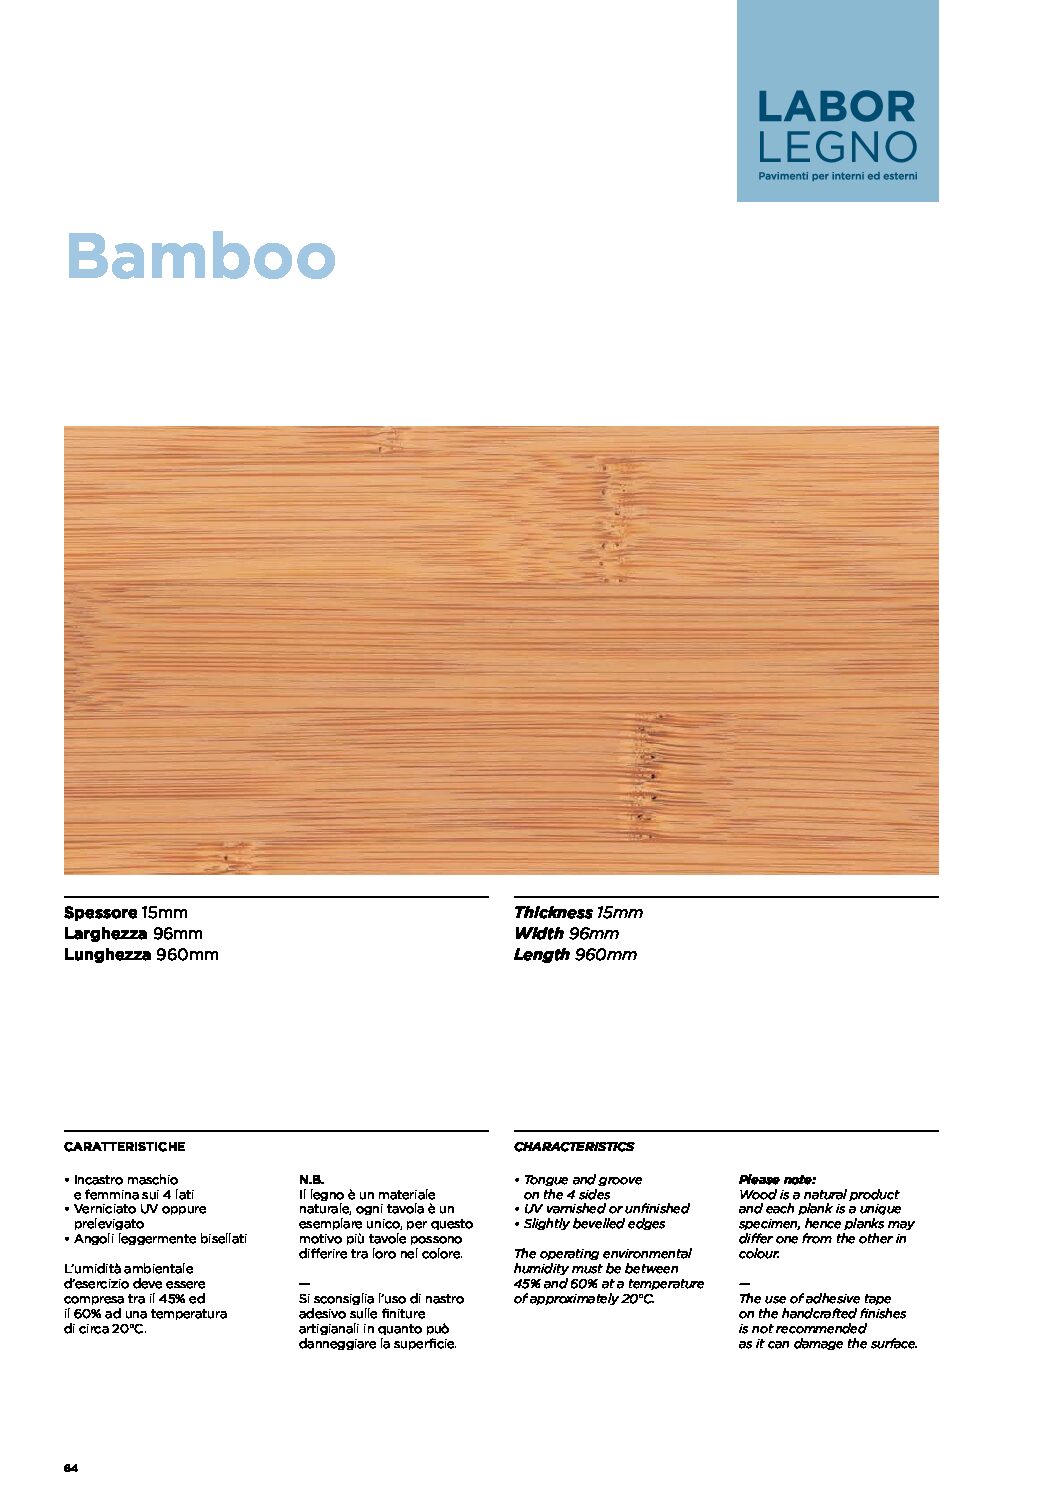 Bamboo - Labor Legno